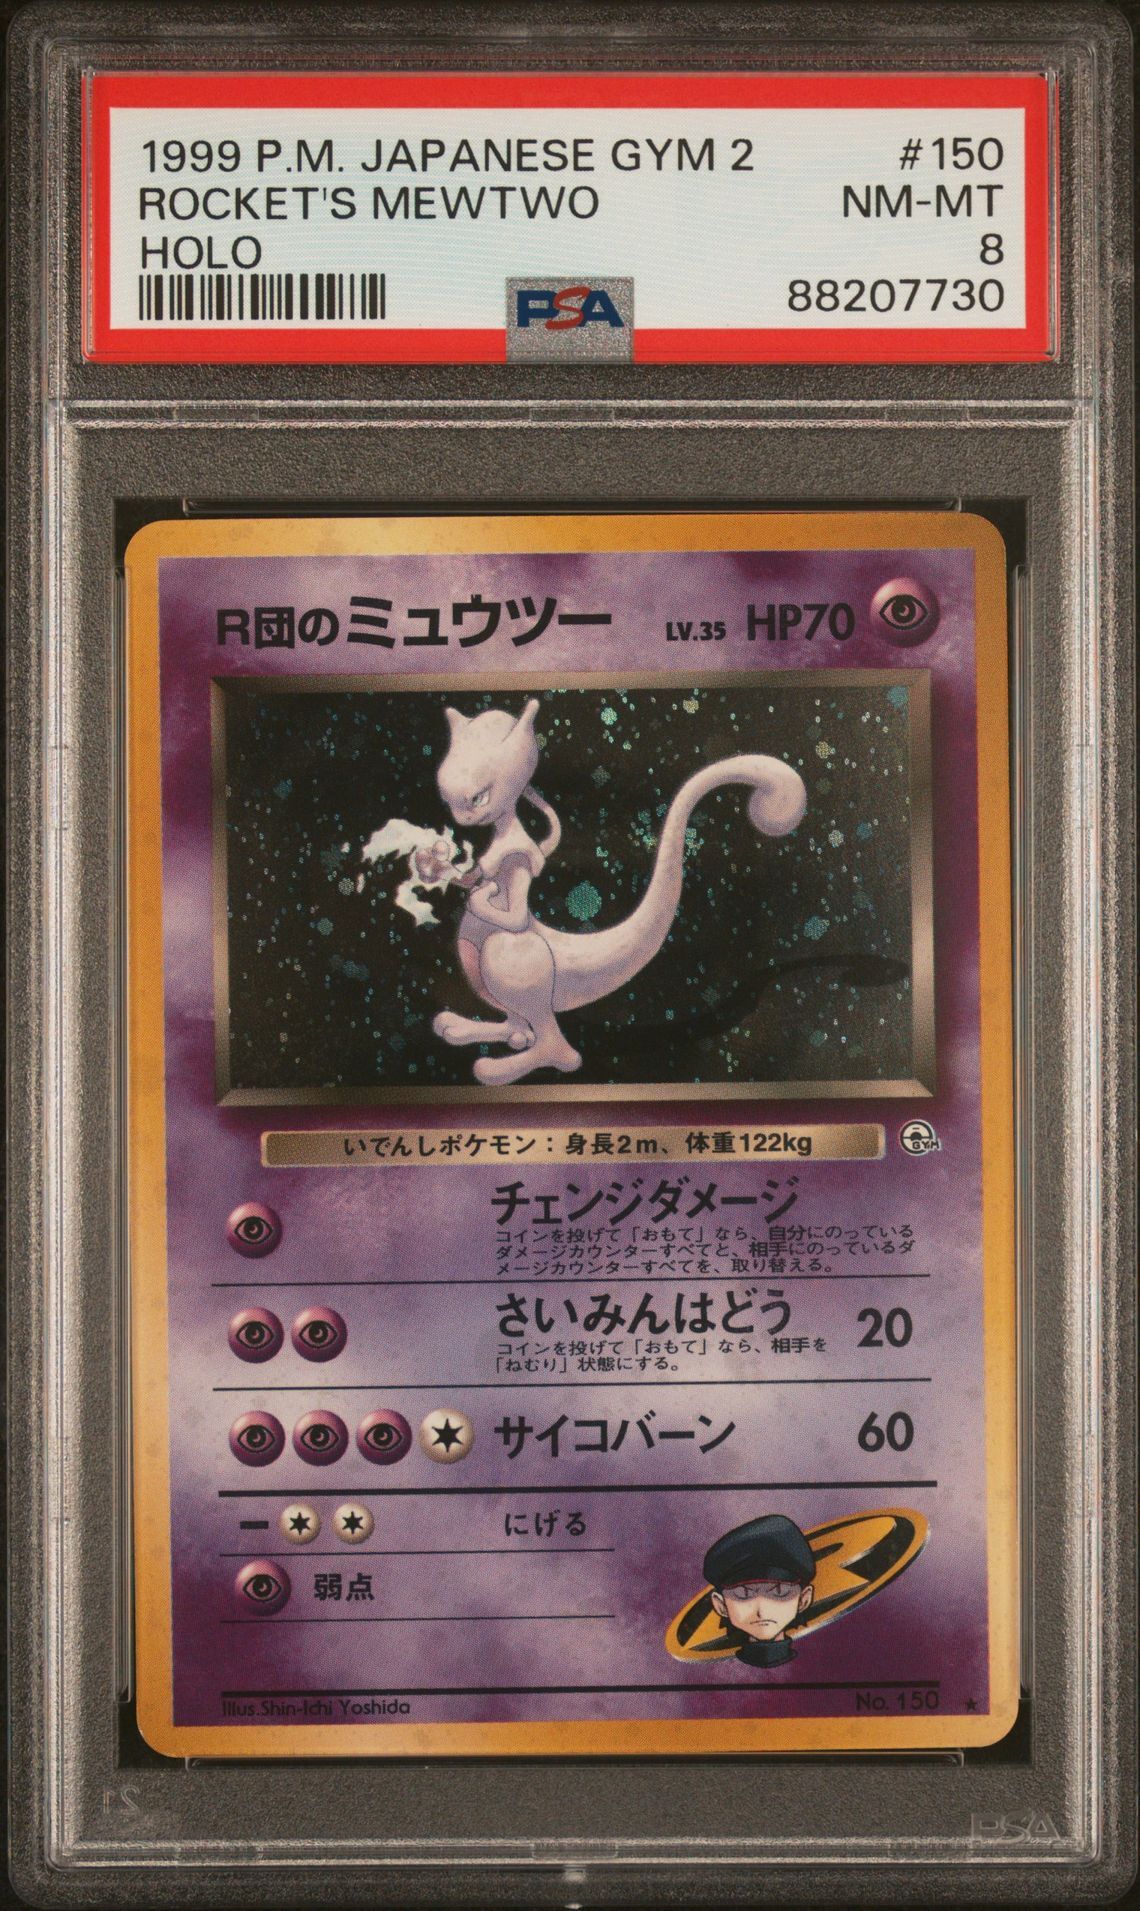 1999 POKEMON JAPANESE GYM 2 150 ROCKET'S MEWTWO-HOLO - PSA 8 NM-MT - Pokémon